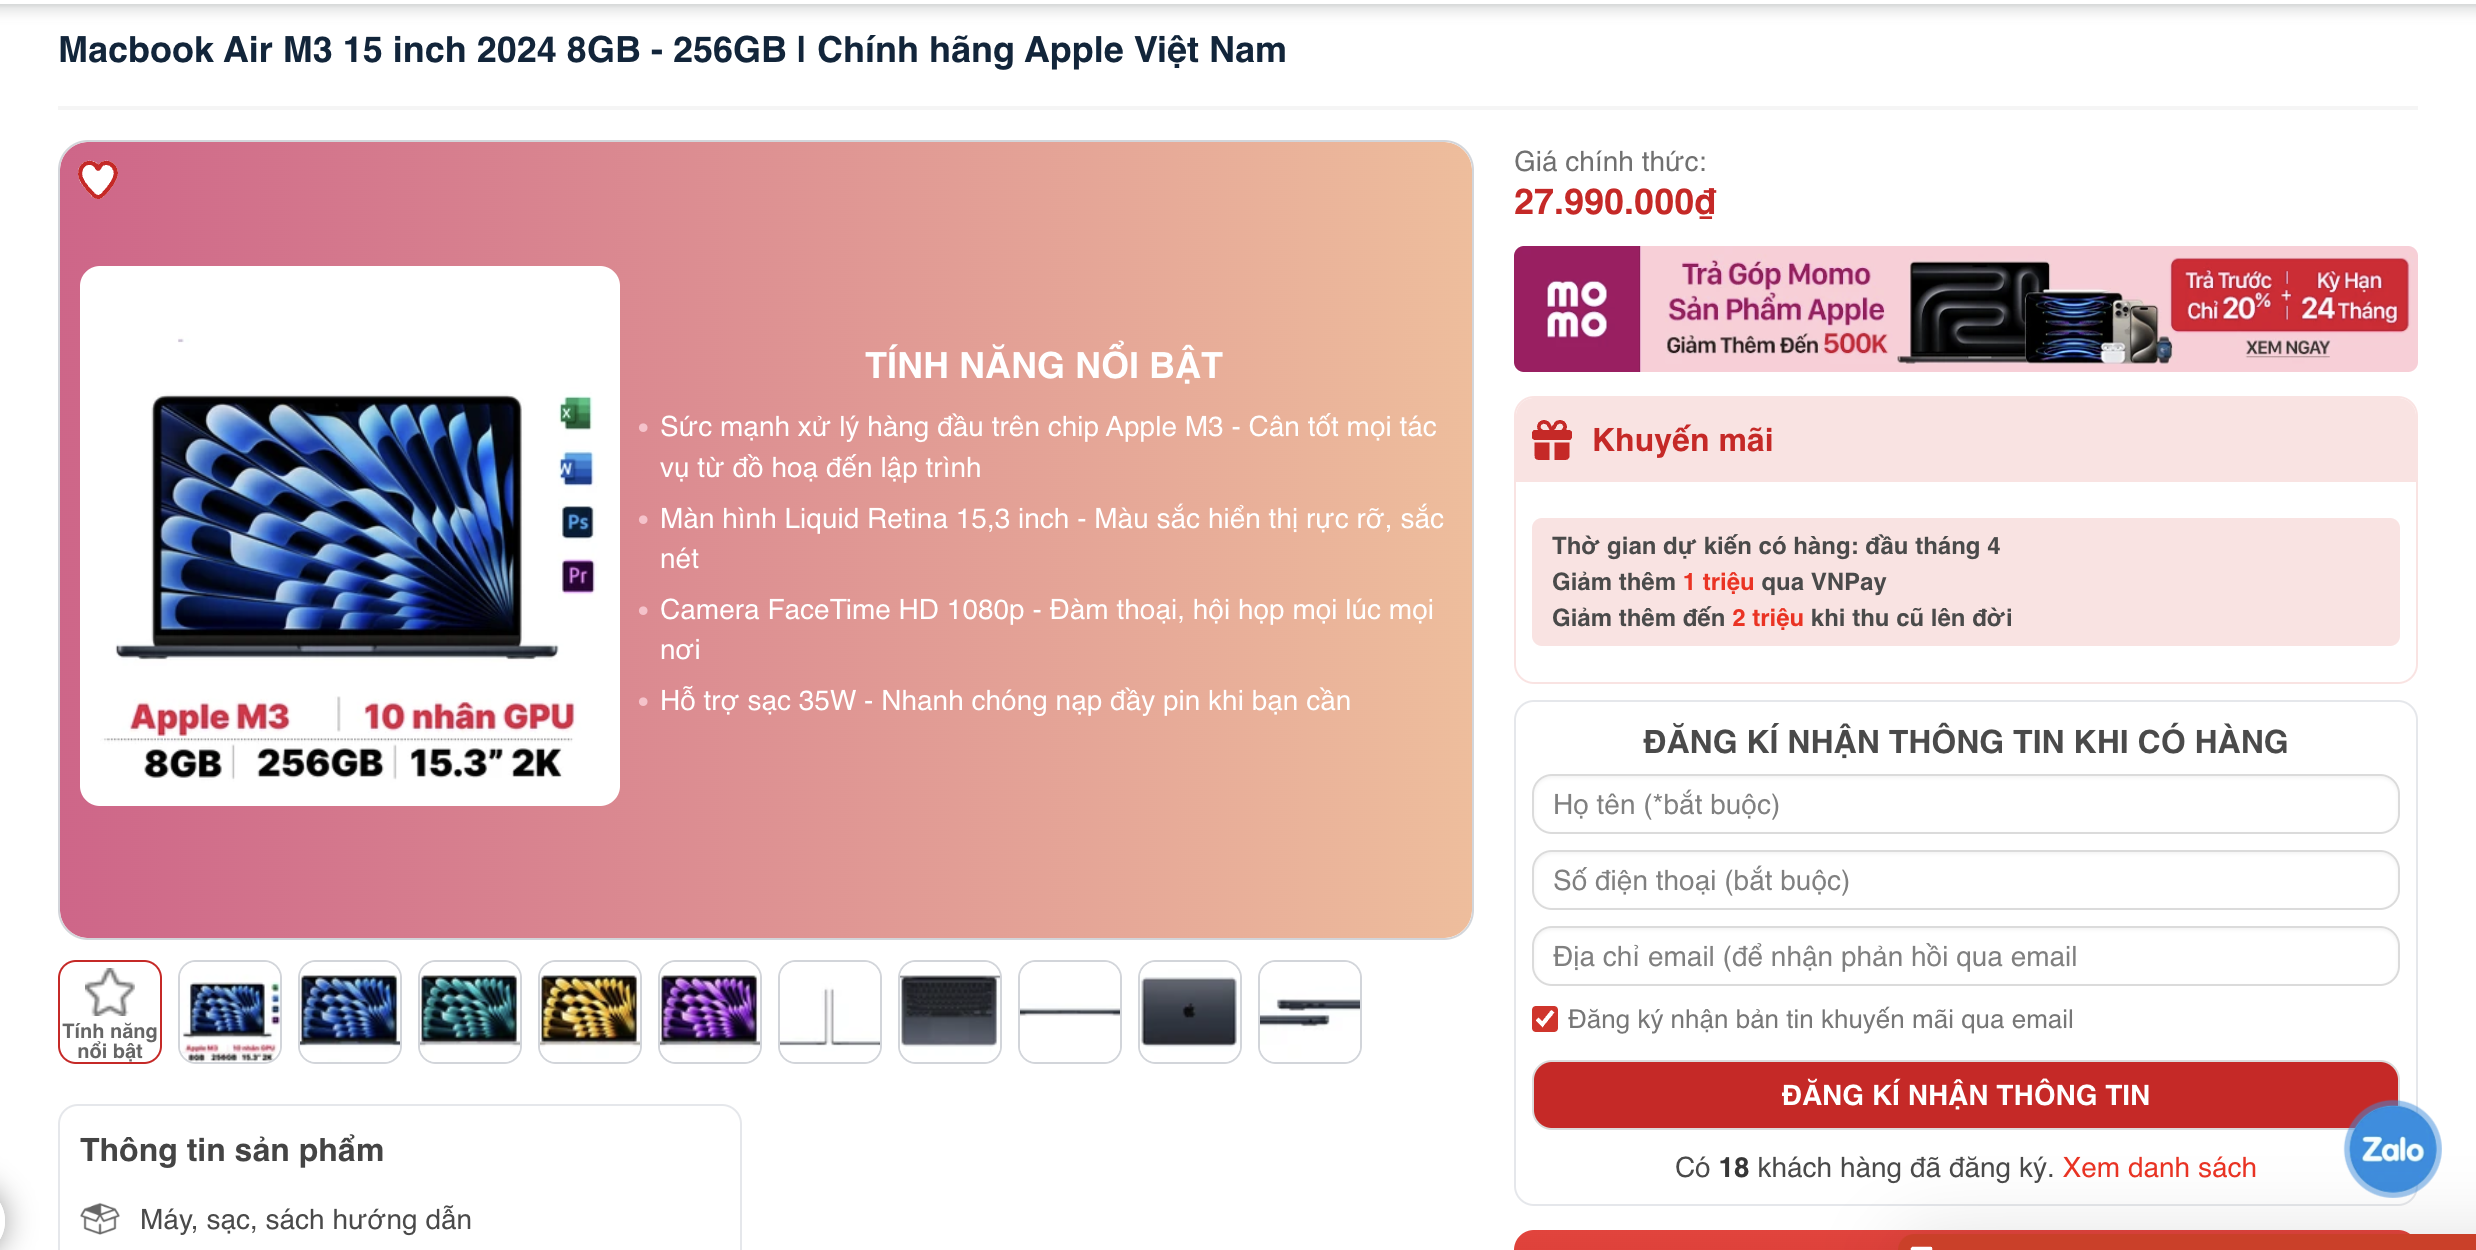 MacBook giảm giá mạnh tại Việt Nam: Cơ hội cho người dùng?